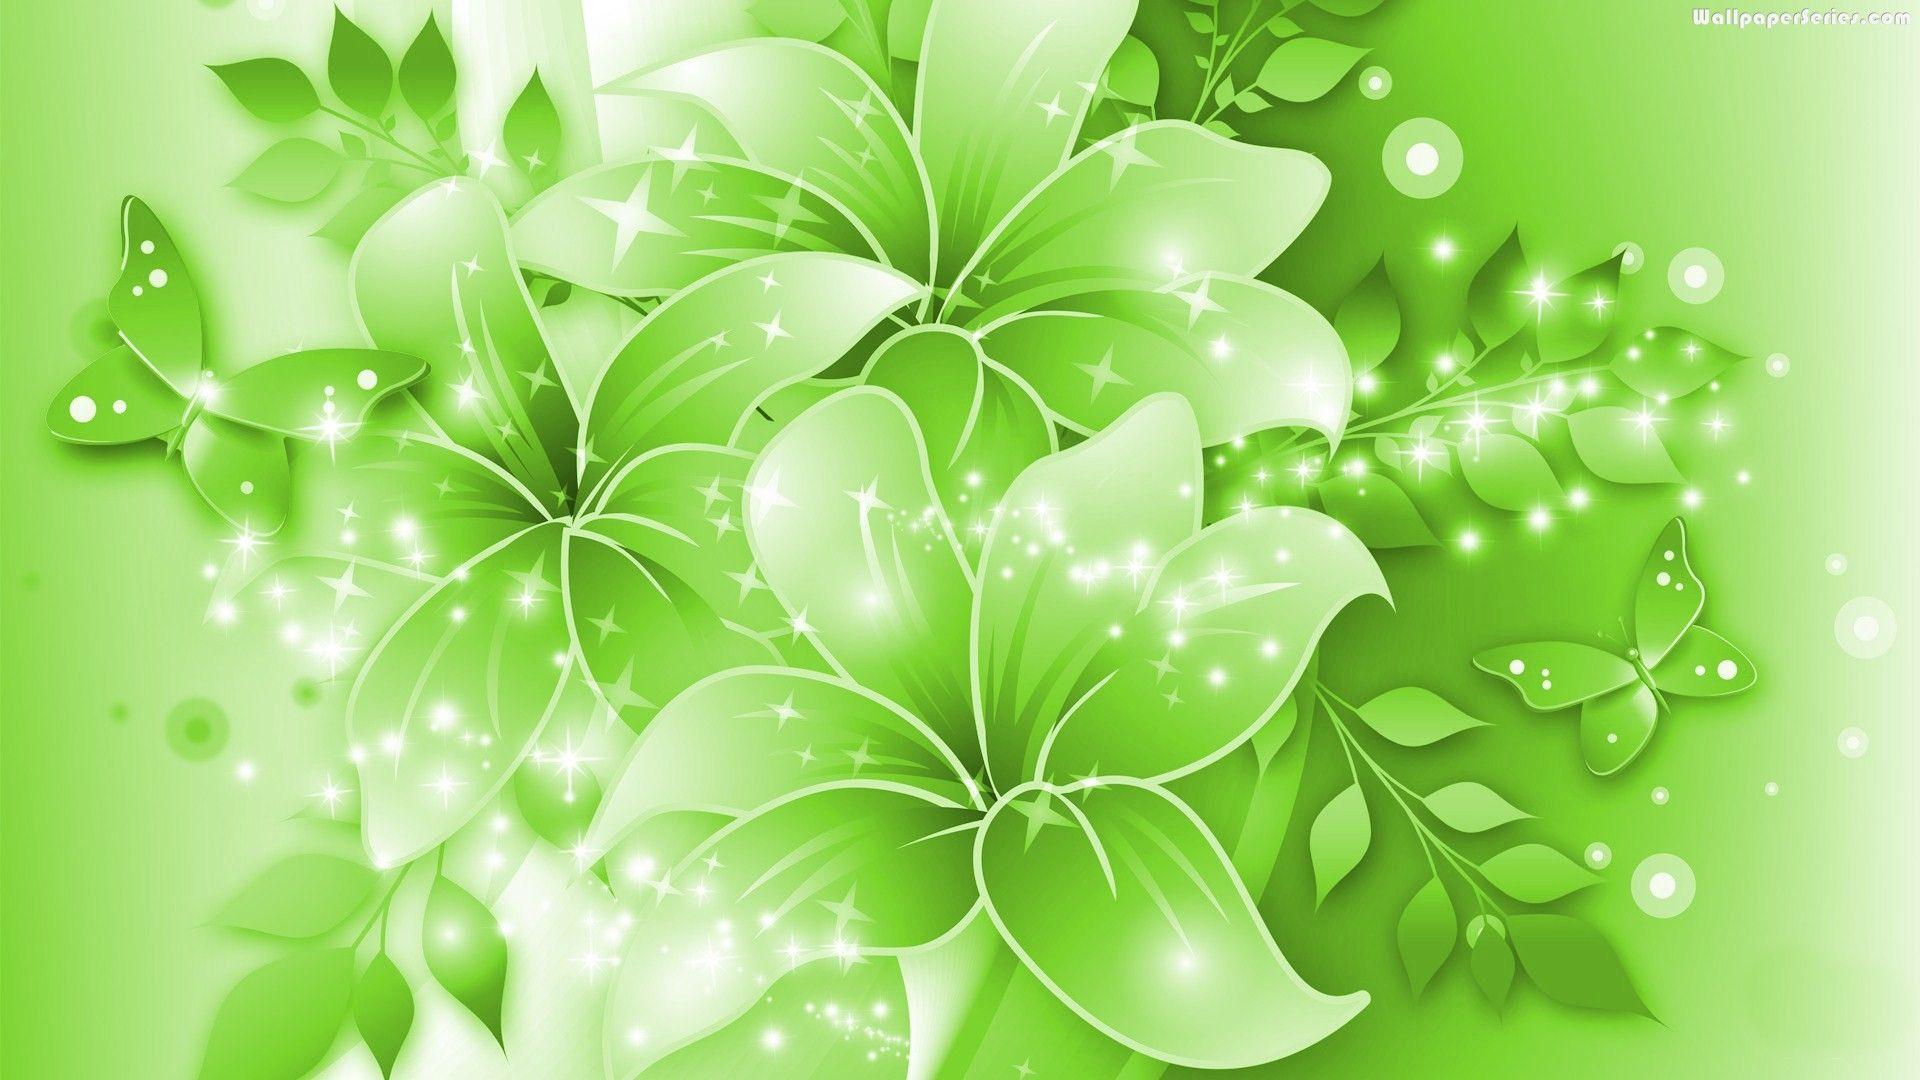 Green Flower Wallpaper, Animated Green Flower Image